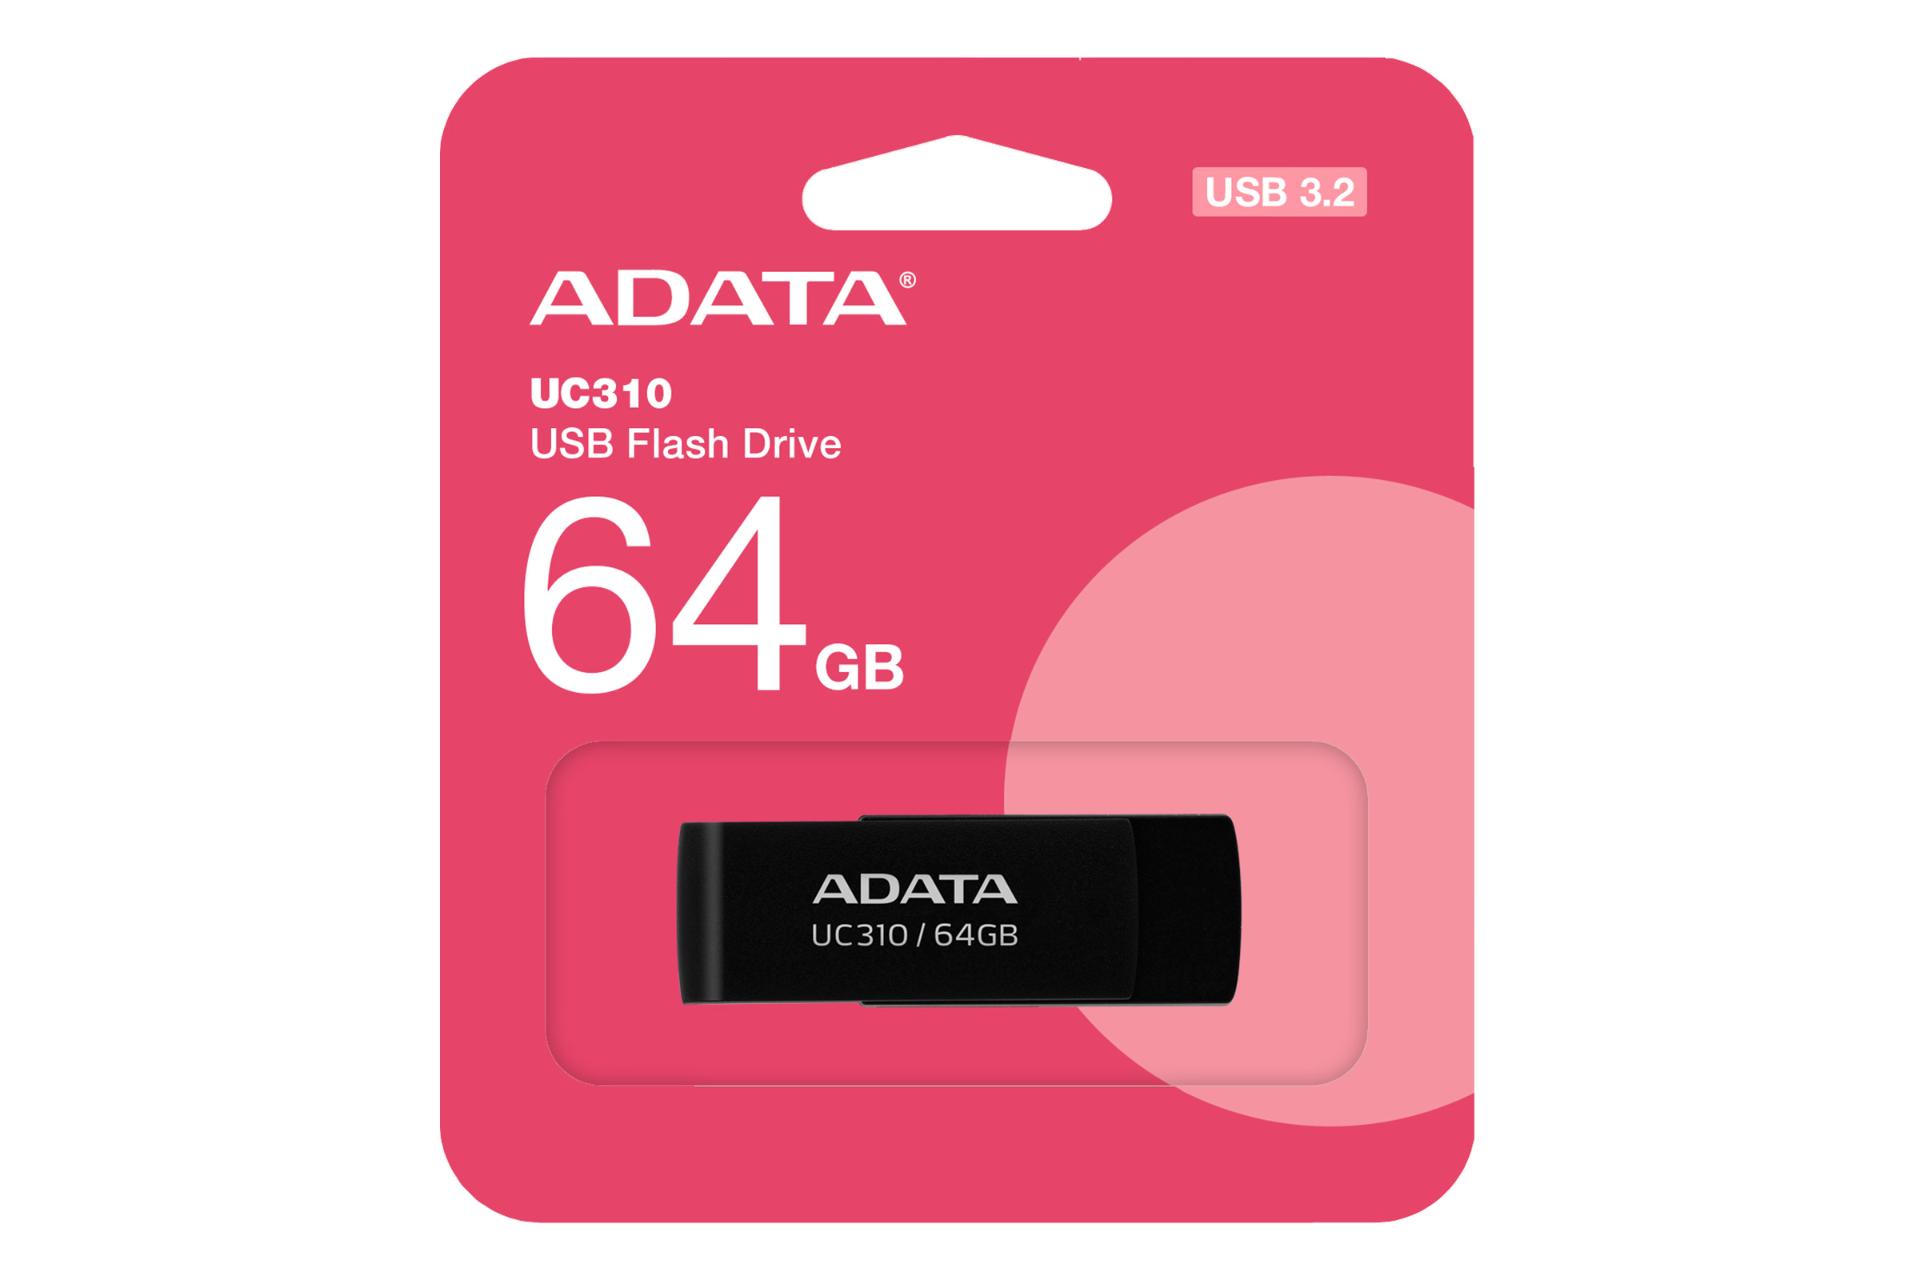 جعبه فلش مموری ای دیتا ADATA UC310 64GB USB 3.2